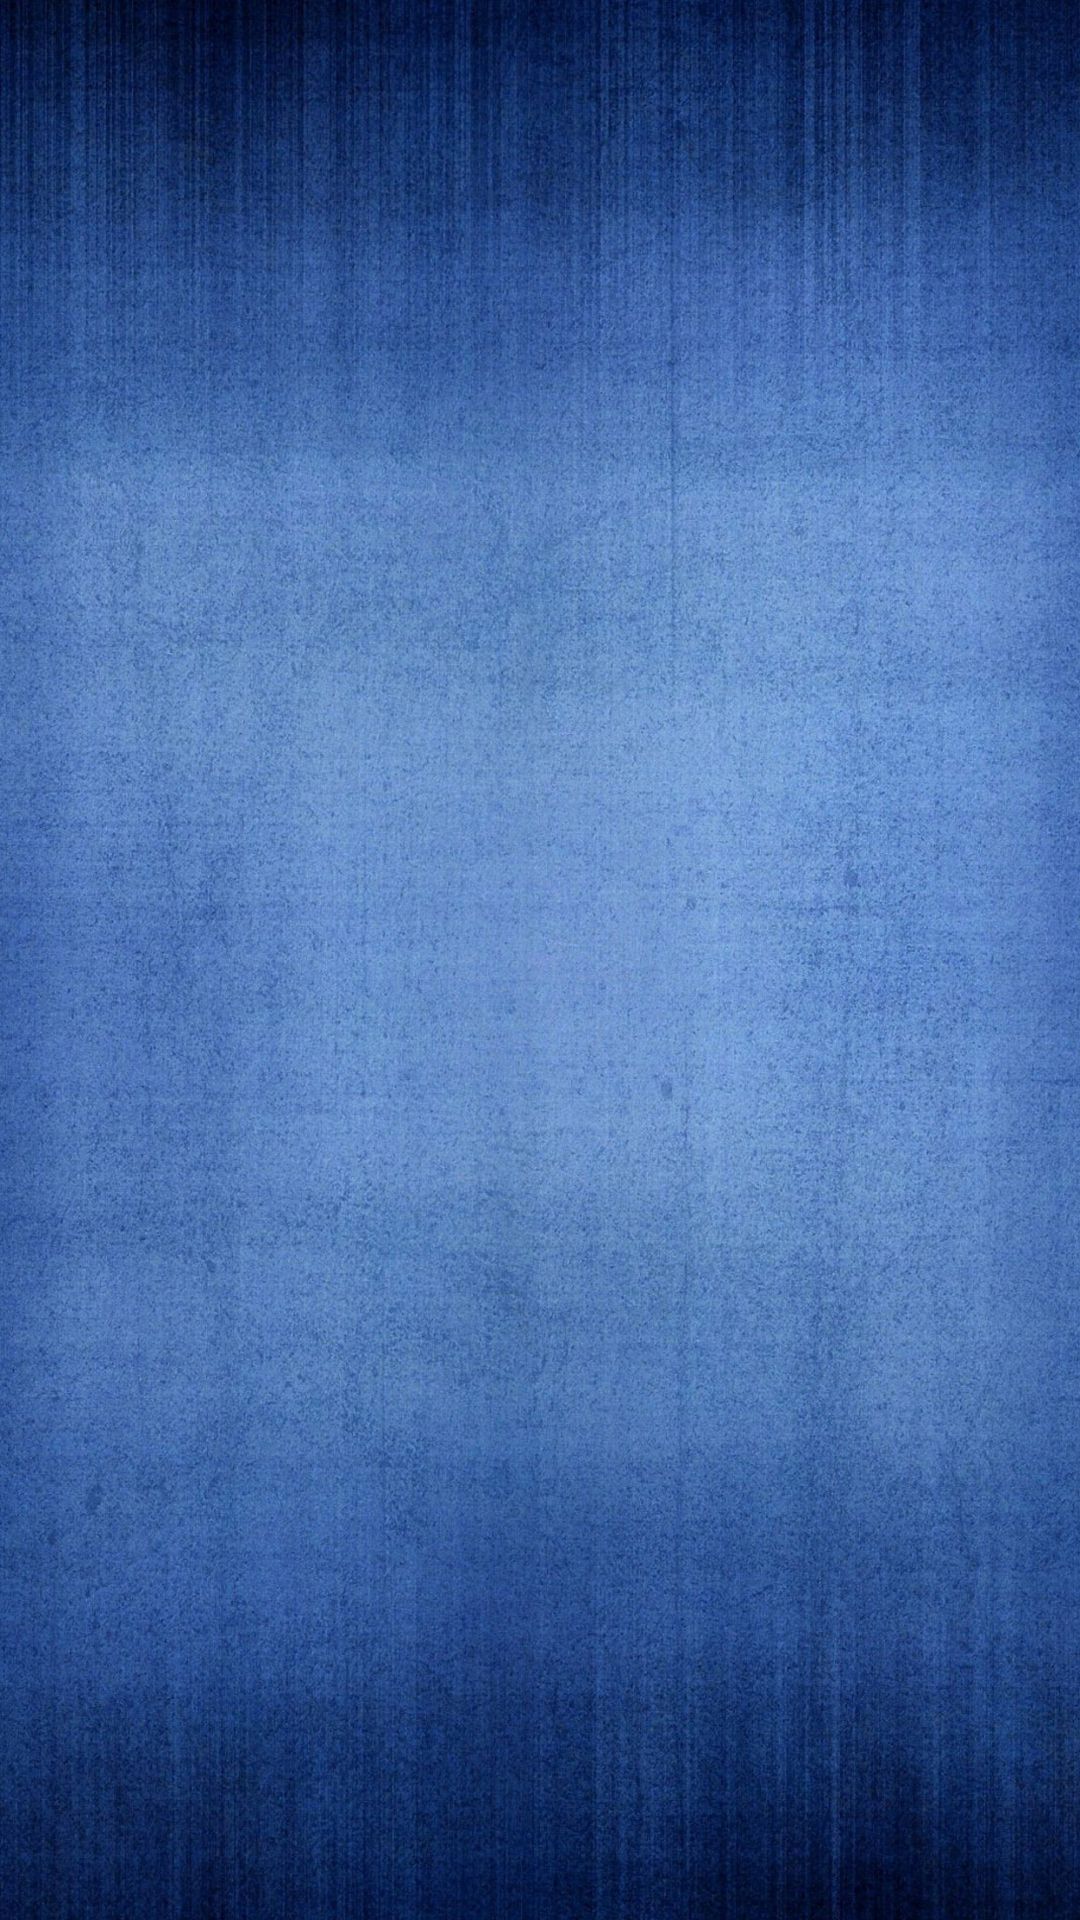 einfache hd wallpaper für mobile,blau,kobaltblau,himmel,muster,elektrisches blau